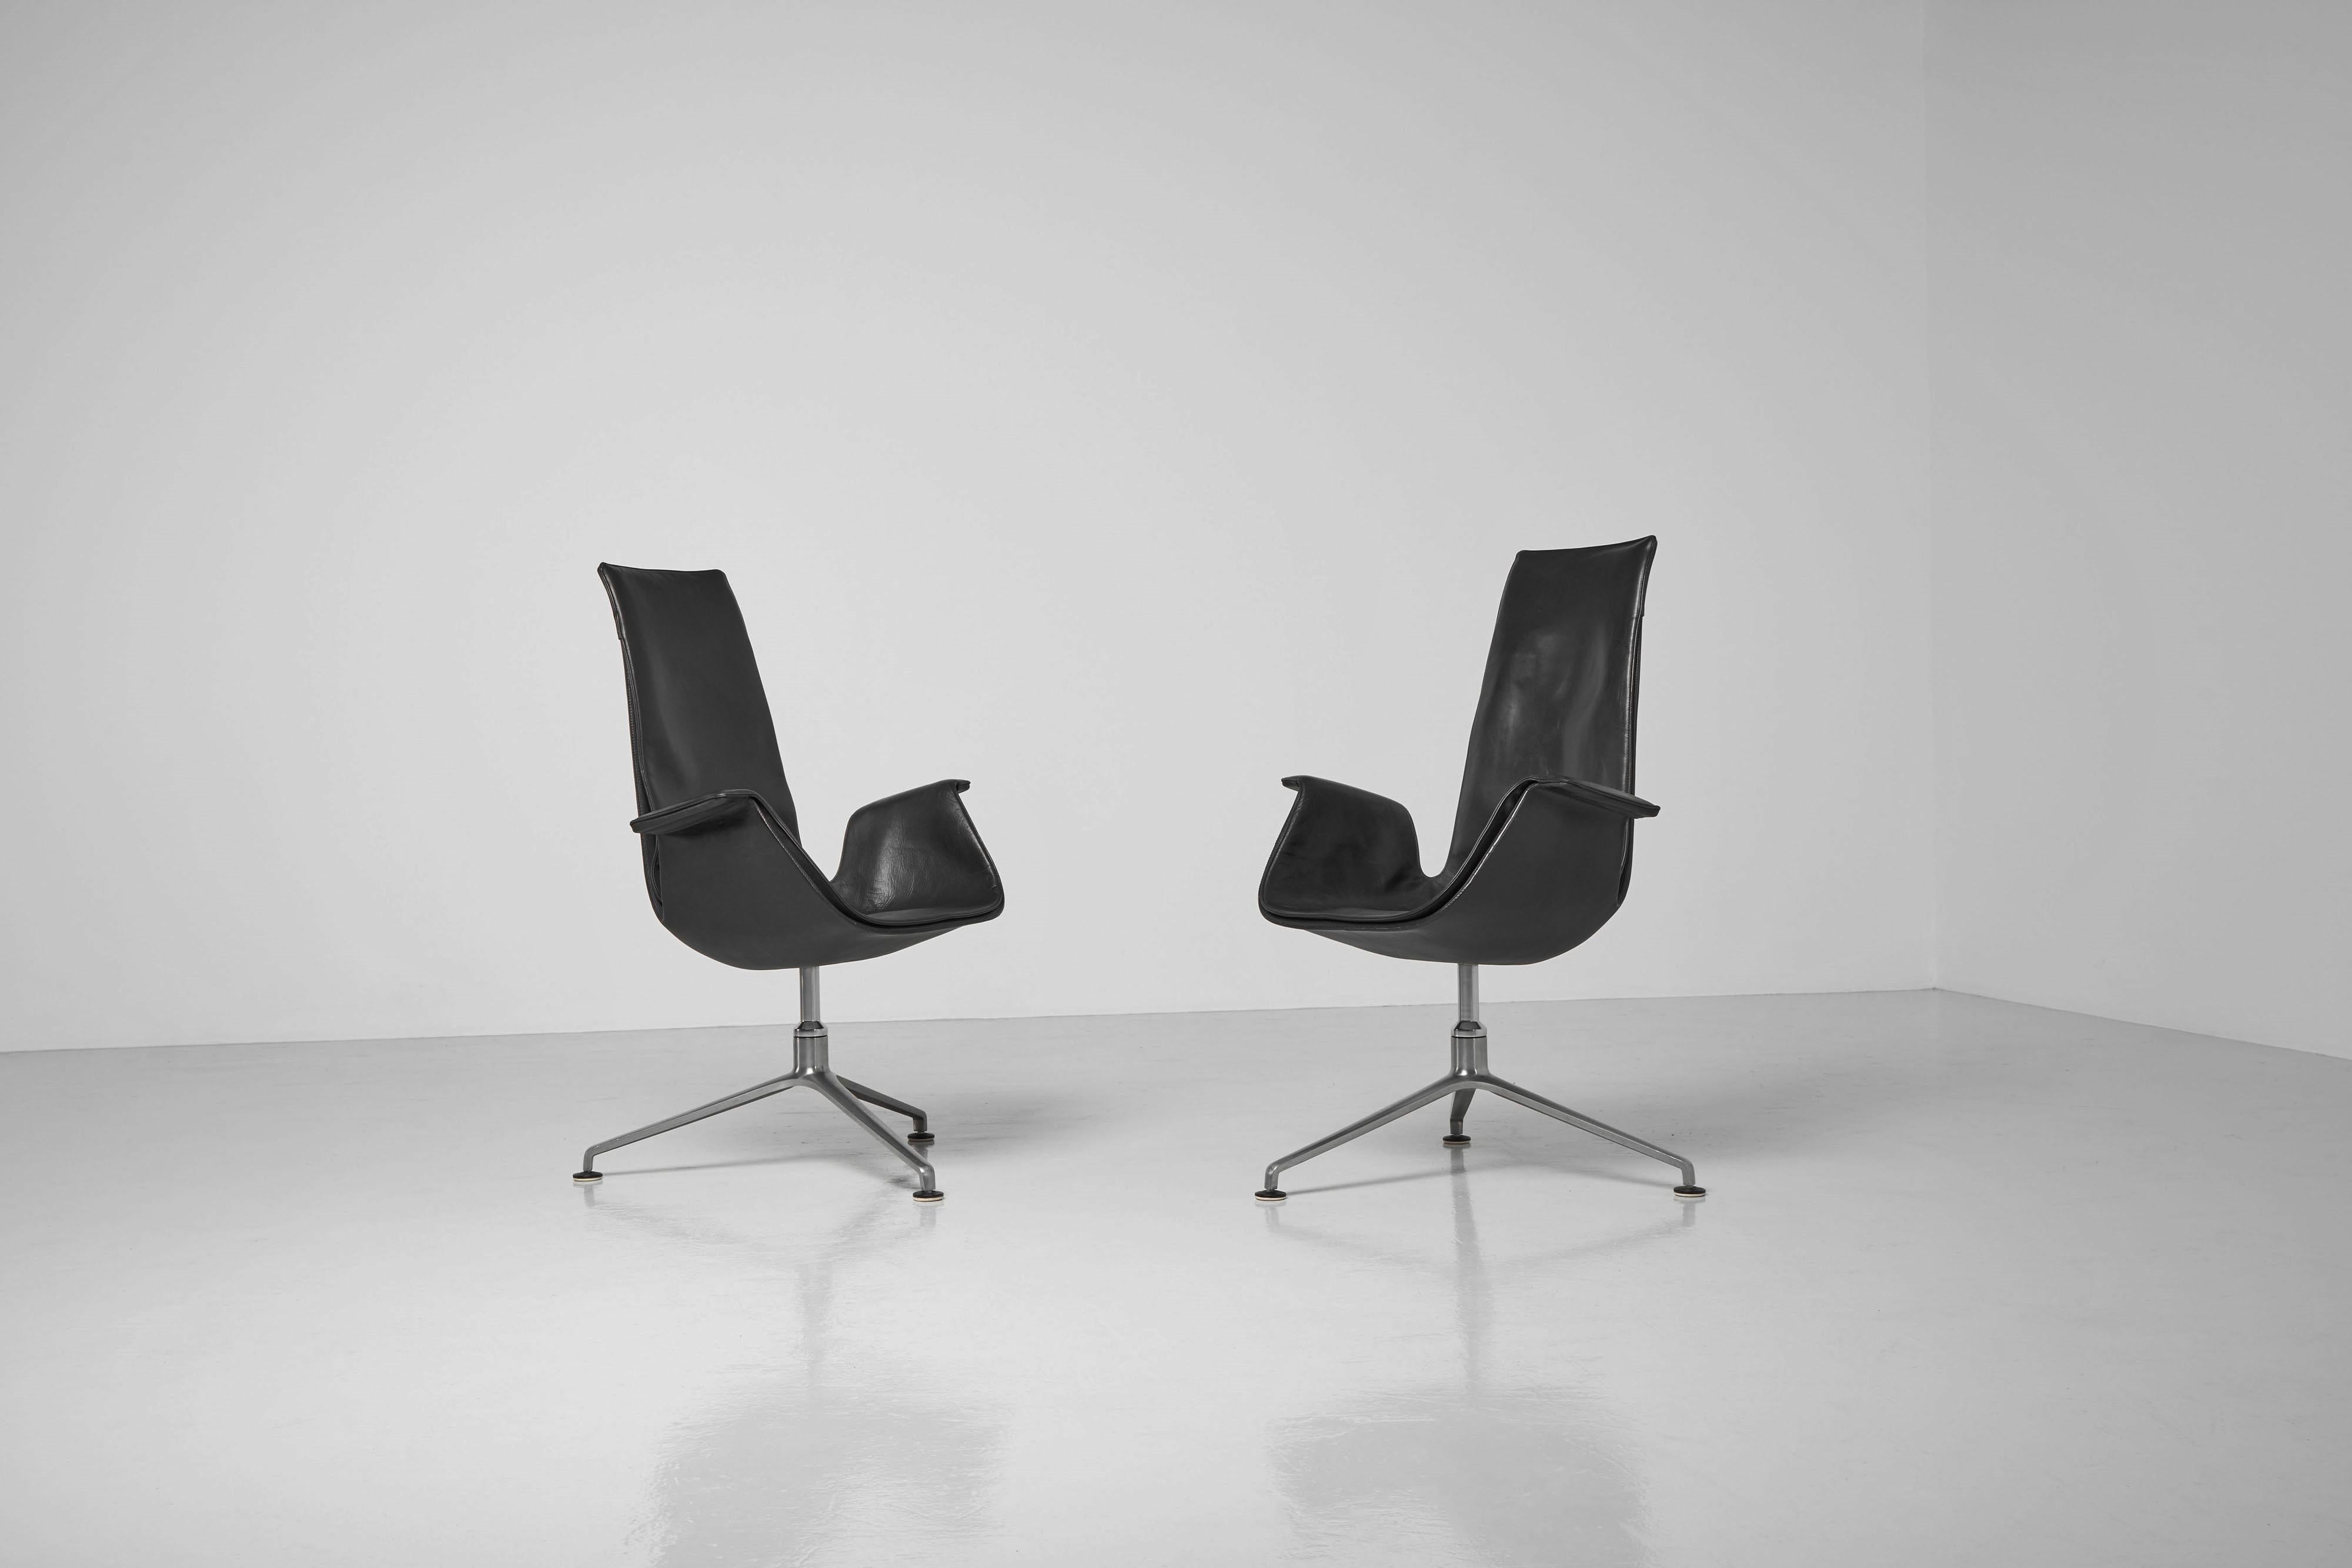 Superbe ensemble de chaises de bureau à dossier haut, modèle FK6725, conçu par Preben Fabricius et Jorgen Kastholm et fabriqué par Kill International, Allemagne 1964. Ces chaises dites 